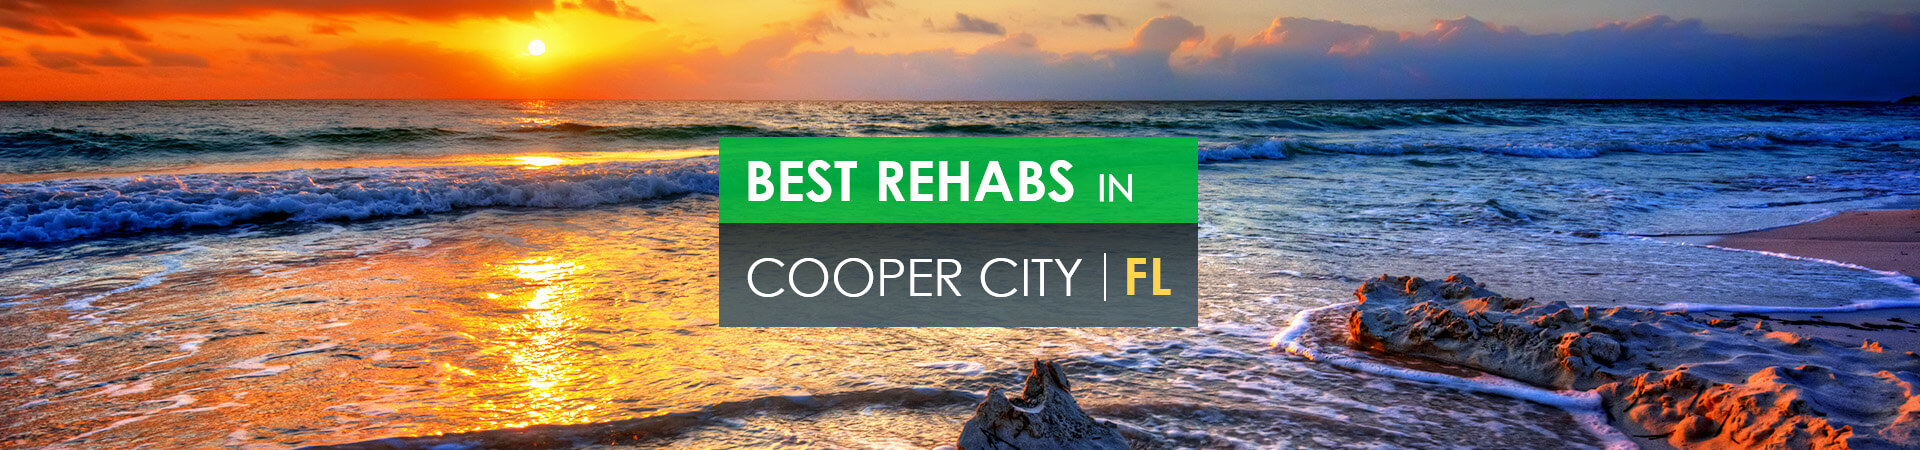 Best rehabs in Cooper City, FL